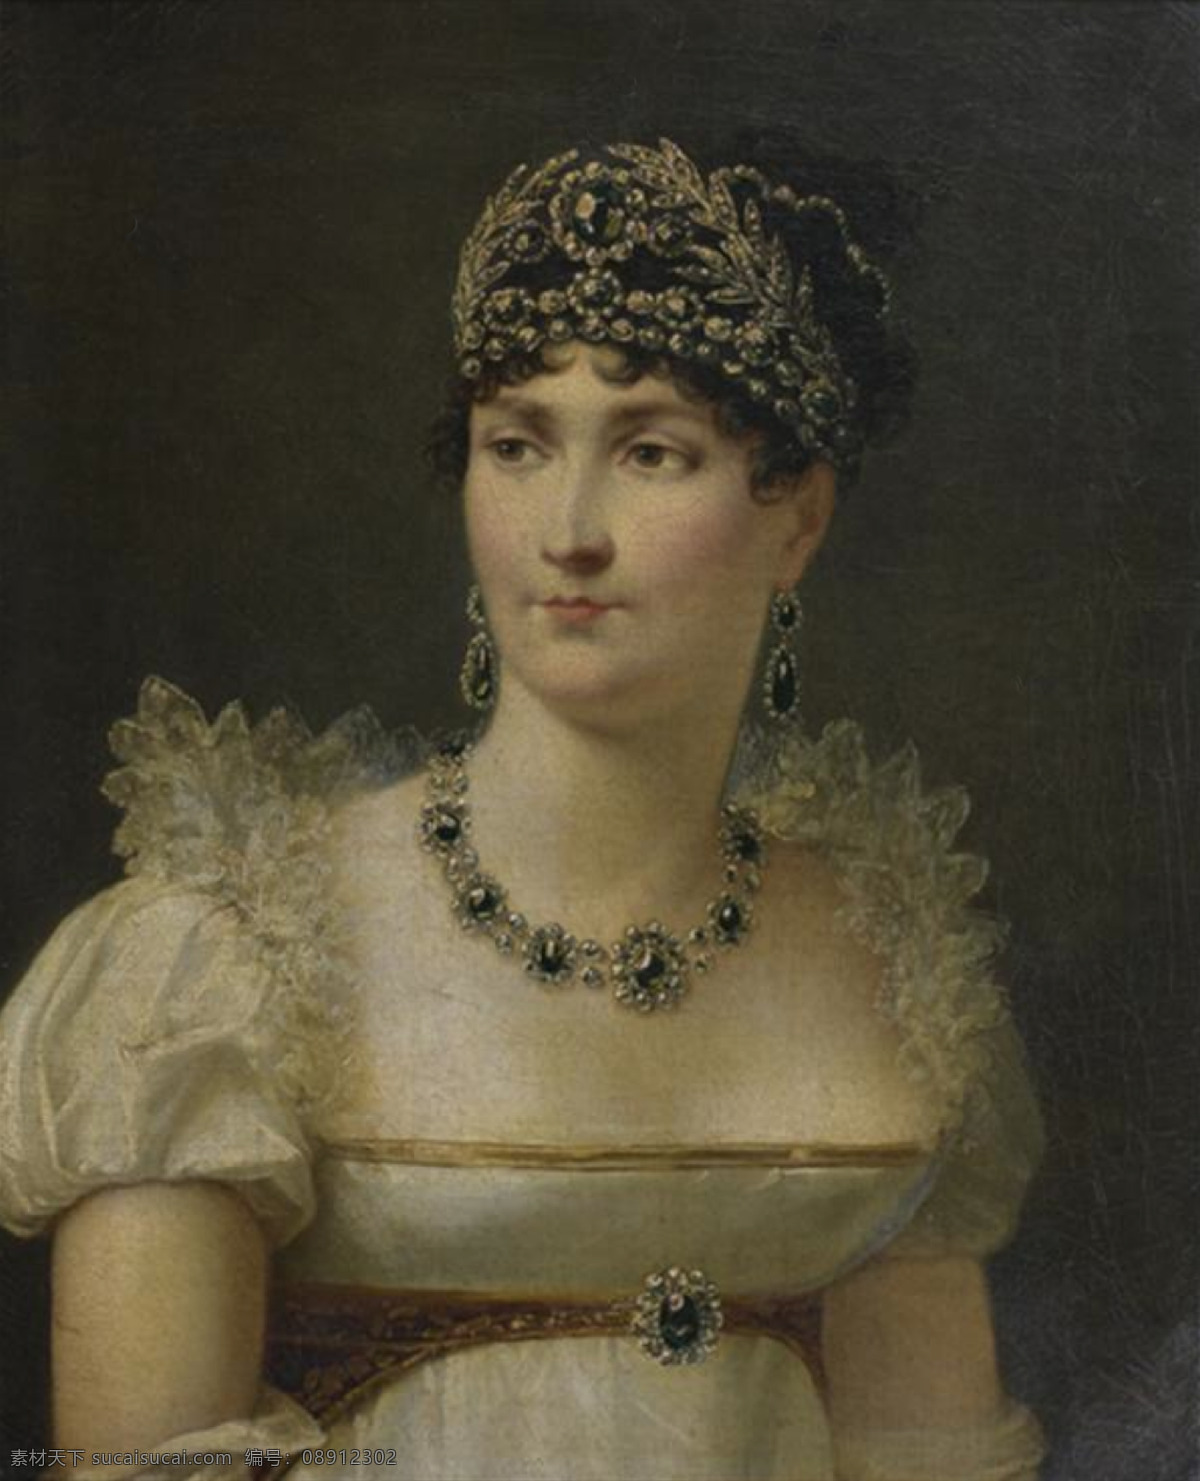 约瑟芬皇后 法国皇后 拿破仑 妻子 半身肖像 暗色调 19世纪油画 油画 绘画书法 文化艺术